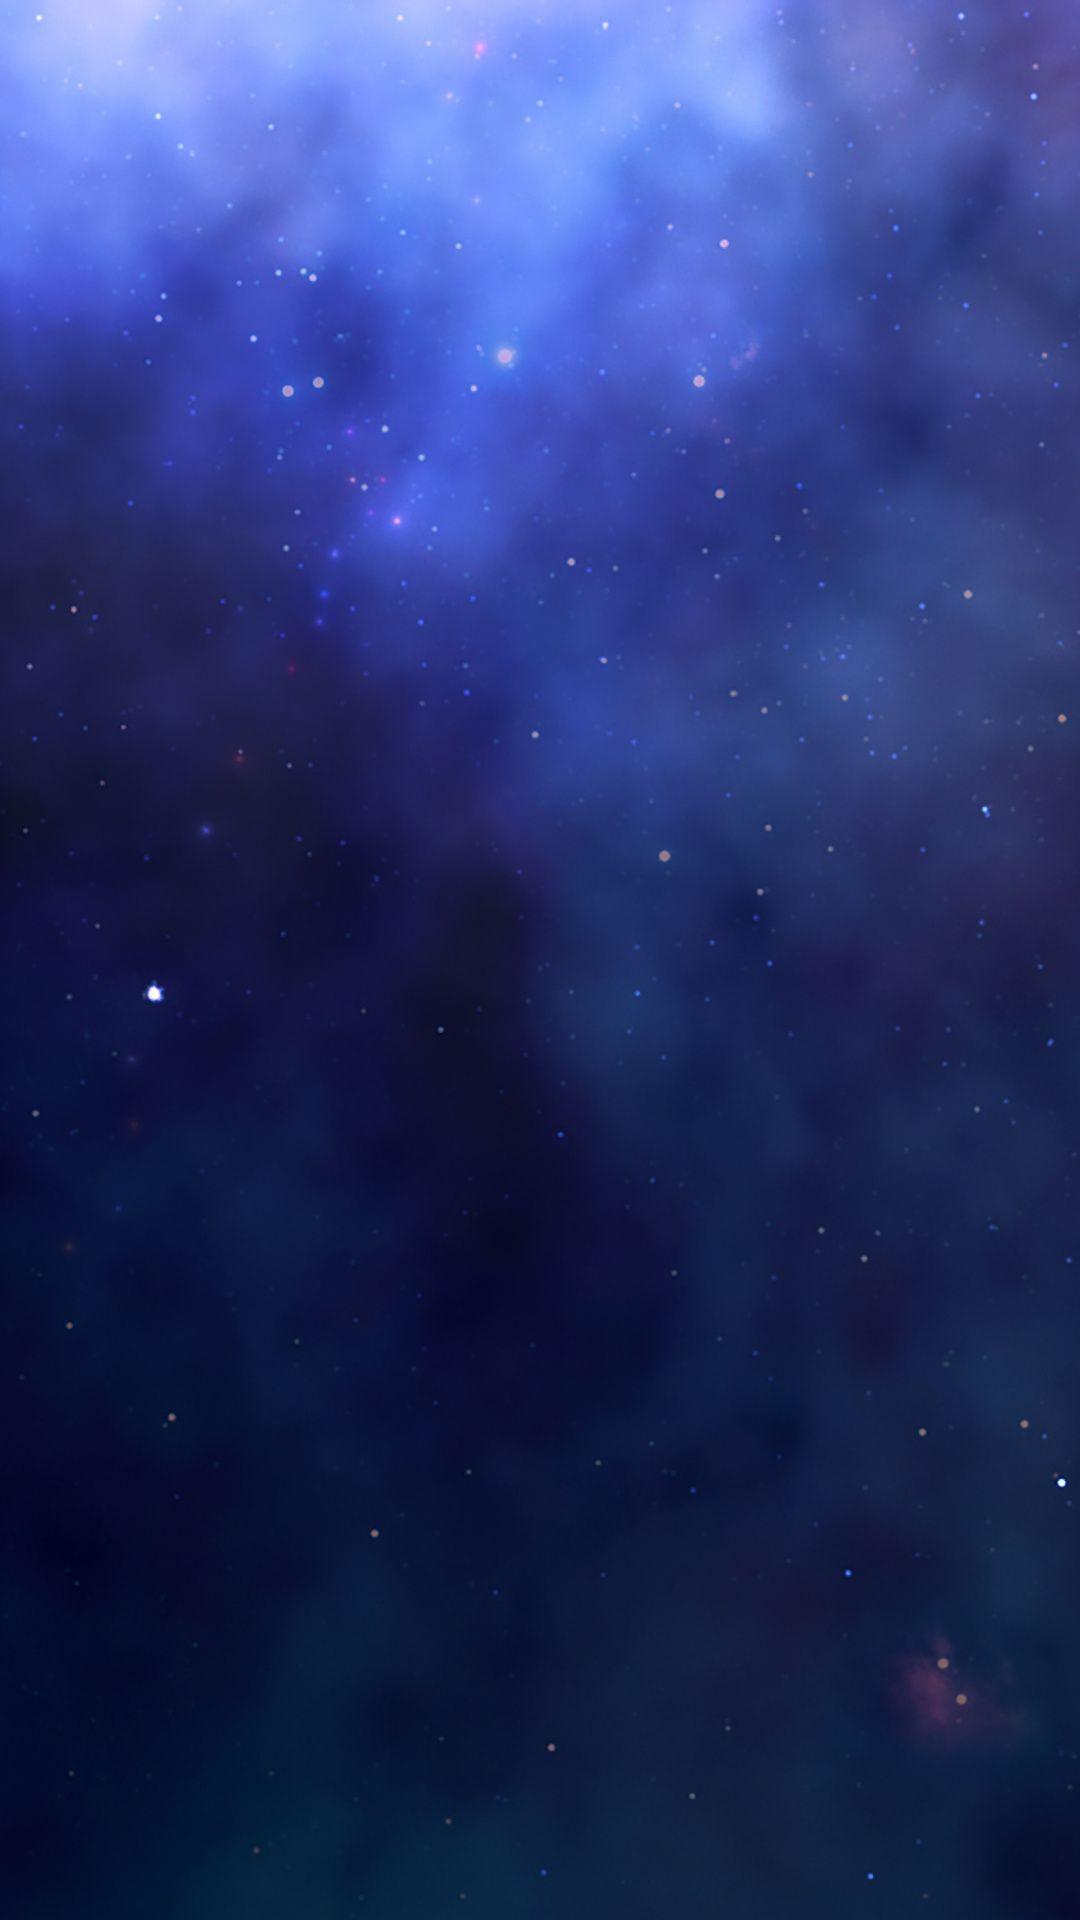 Hình ảnh nền các ngôi sao thẩm mỹ 1080x1920 vào năm 2020. Hình nền màu xanh đậm, Hình nền tối, Hình nền màu xanh iphone